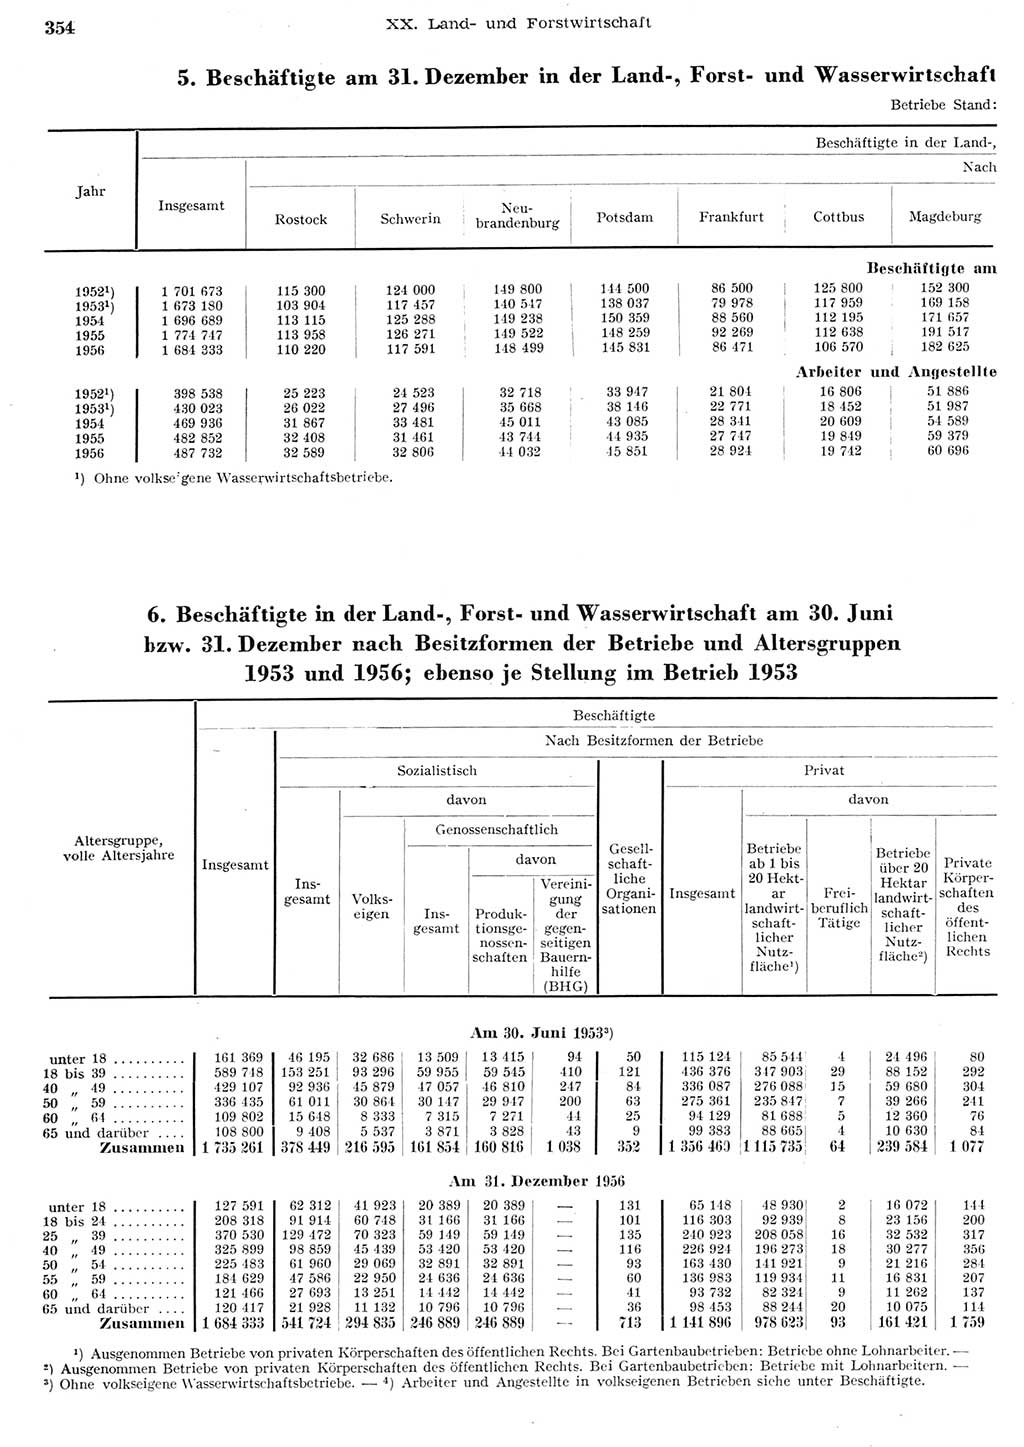 Statistisches Jahrbuch der Deutschen Demokratischen Republik (DDR) 1956, Seite 354 (Stat. Jb. DDR 1956, S. 354)